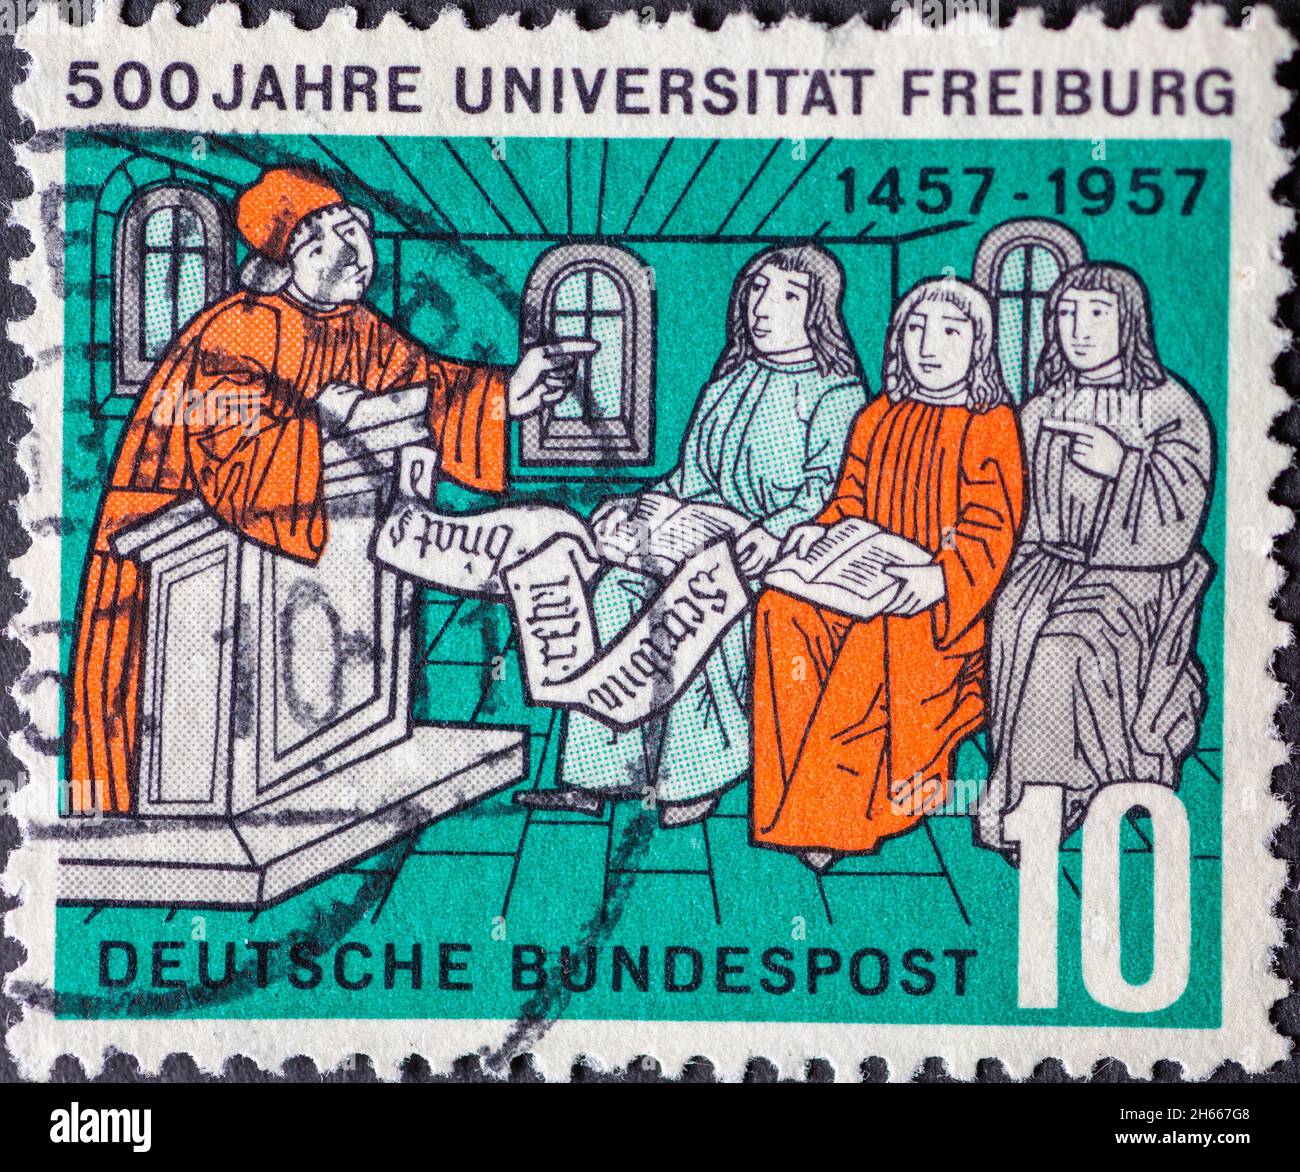 ALLEMAGNE - VERS 1957: Timbre-poste imprimé en Allemagne montrant une conférence universitaire historique.Texte: 500 ans de l'Université de Fribourg Banque D'Images